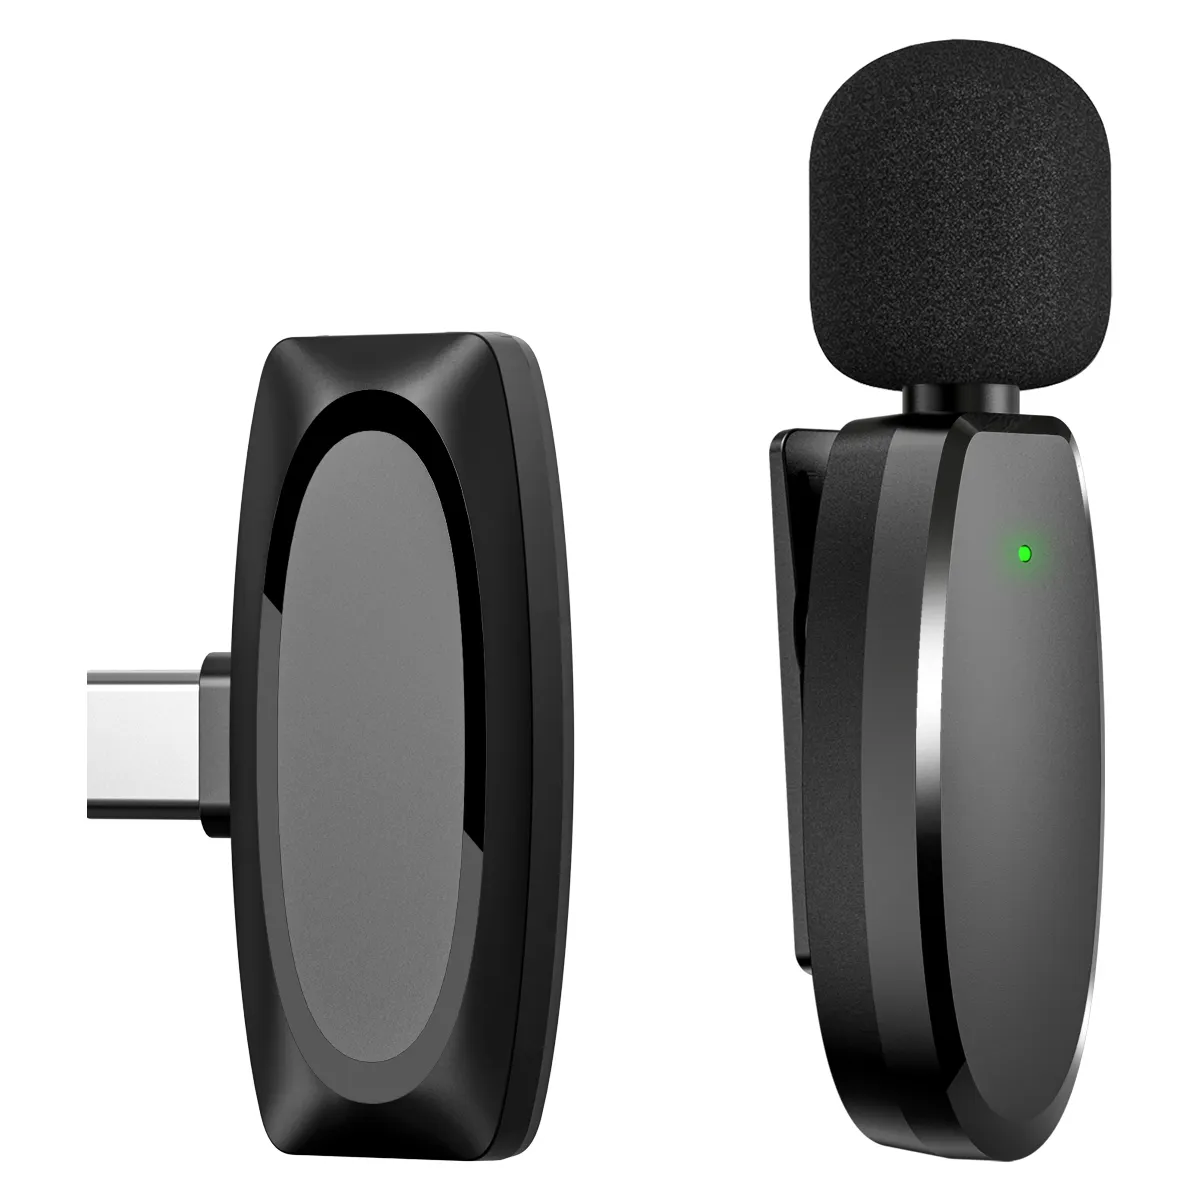 VIMAI mikrofon Mini, Mic sistem kerah Audio rekaman dan wawancara nirkabel Lavalier untuk ponsel pintar